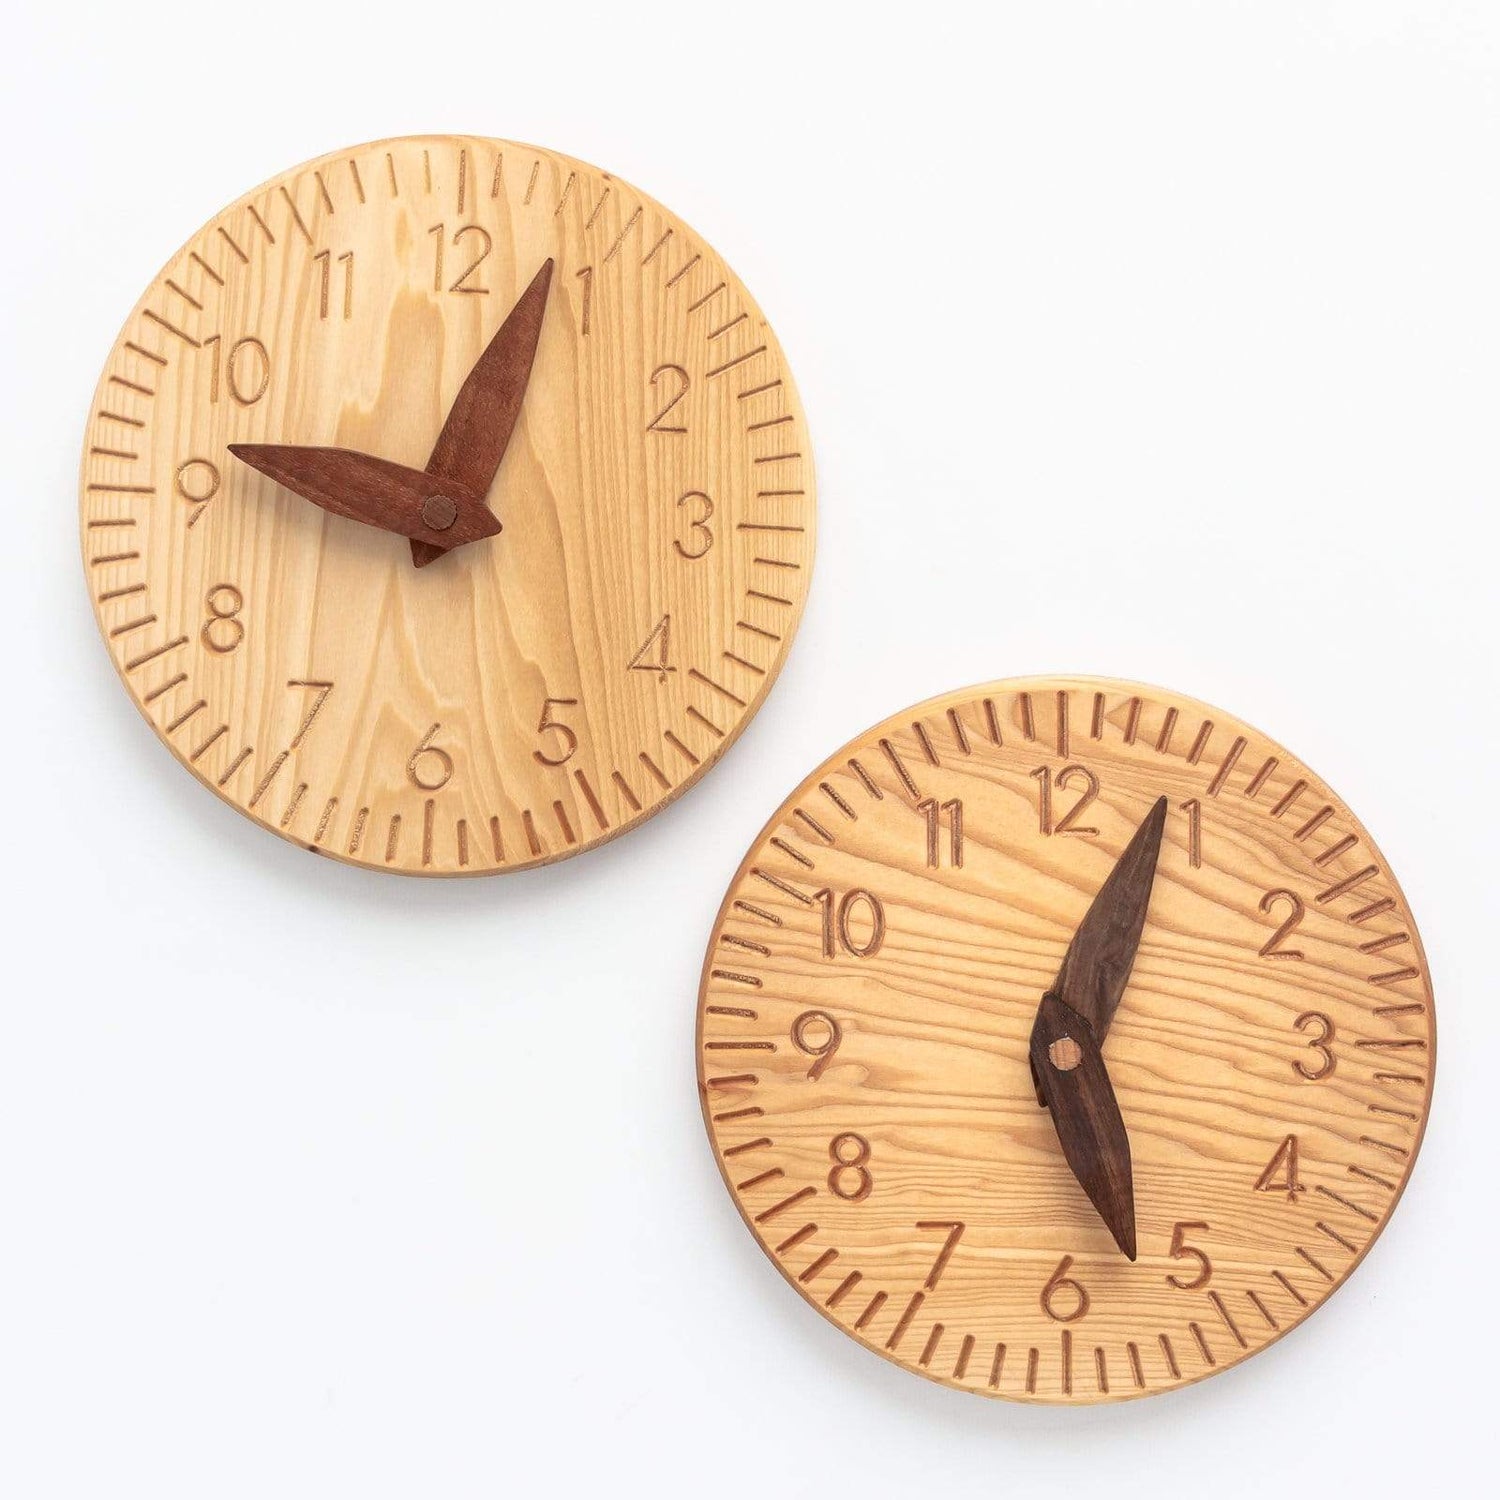 Oyuncak House Wooden Toys Handmade Wooden Clock